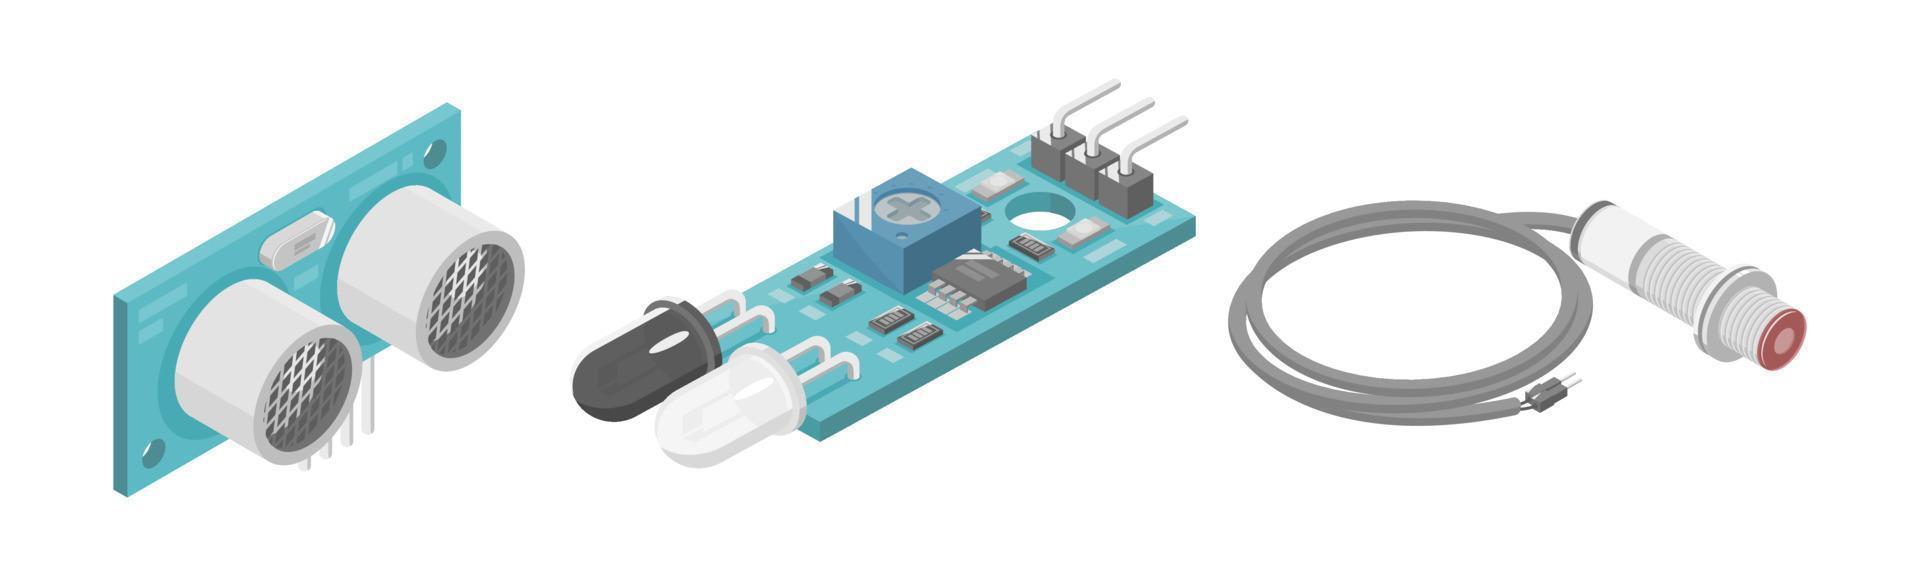 arduino ultrasons ir infrarouge module capteur microcontrôleur interface plc composant industriel isométrique dessin animé vecteur